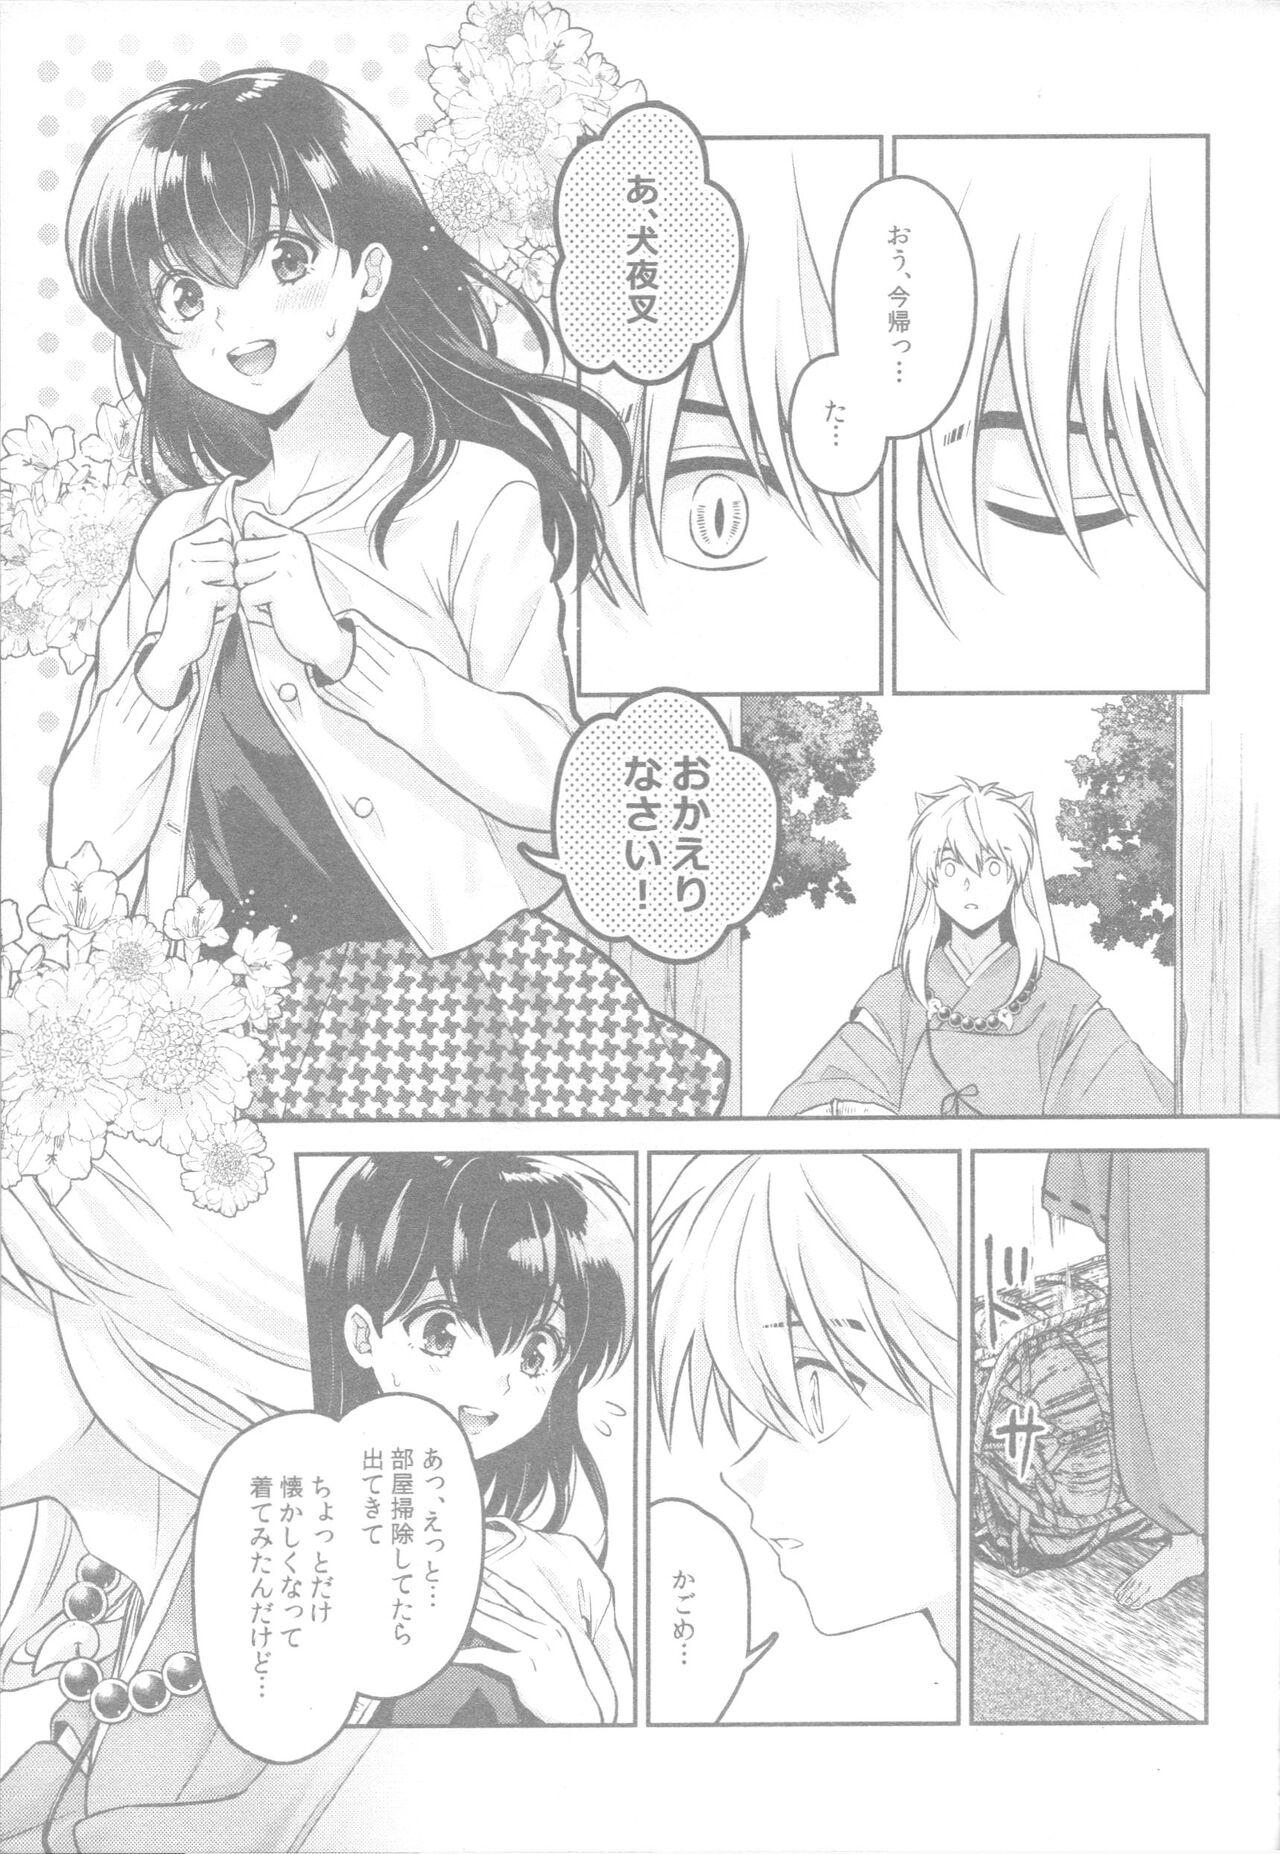 Nut Soshite Mainichi ga Tsuzuite iku - Inuyasha Awesome - Page 10